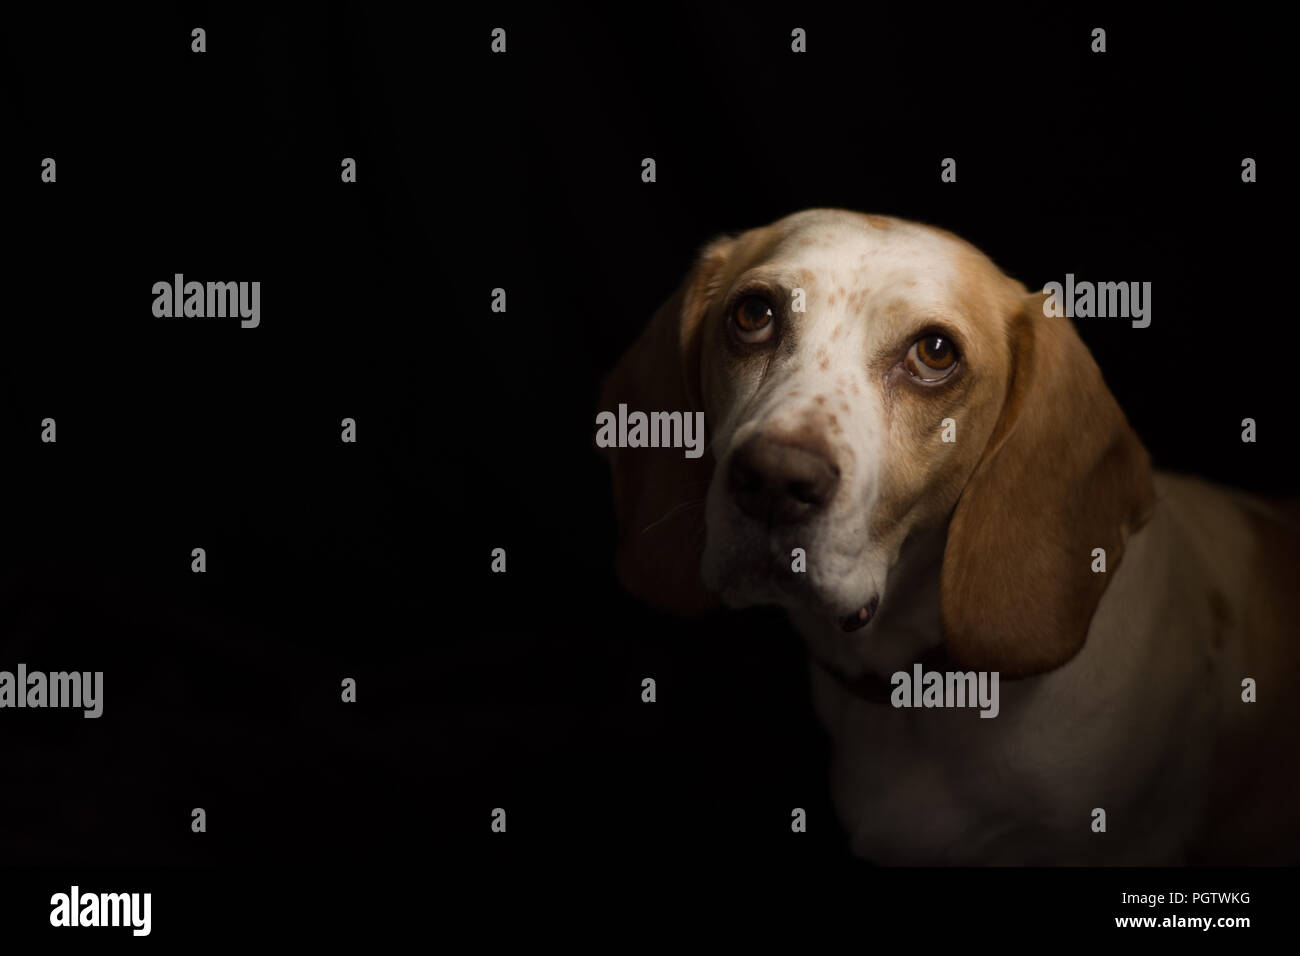 Tan et blanc chien de taille moyenne à la recherche des grands yeux bruns avec un fond noir Banque D'Images